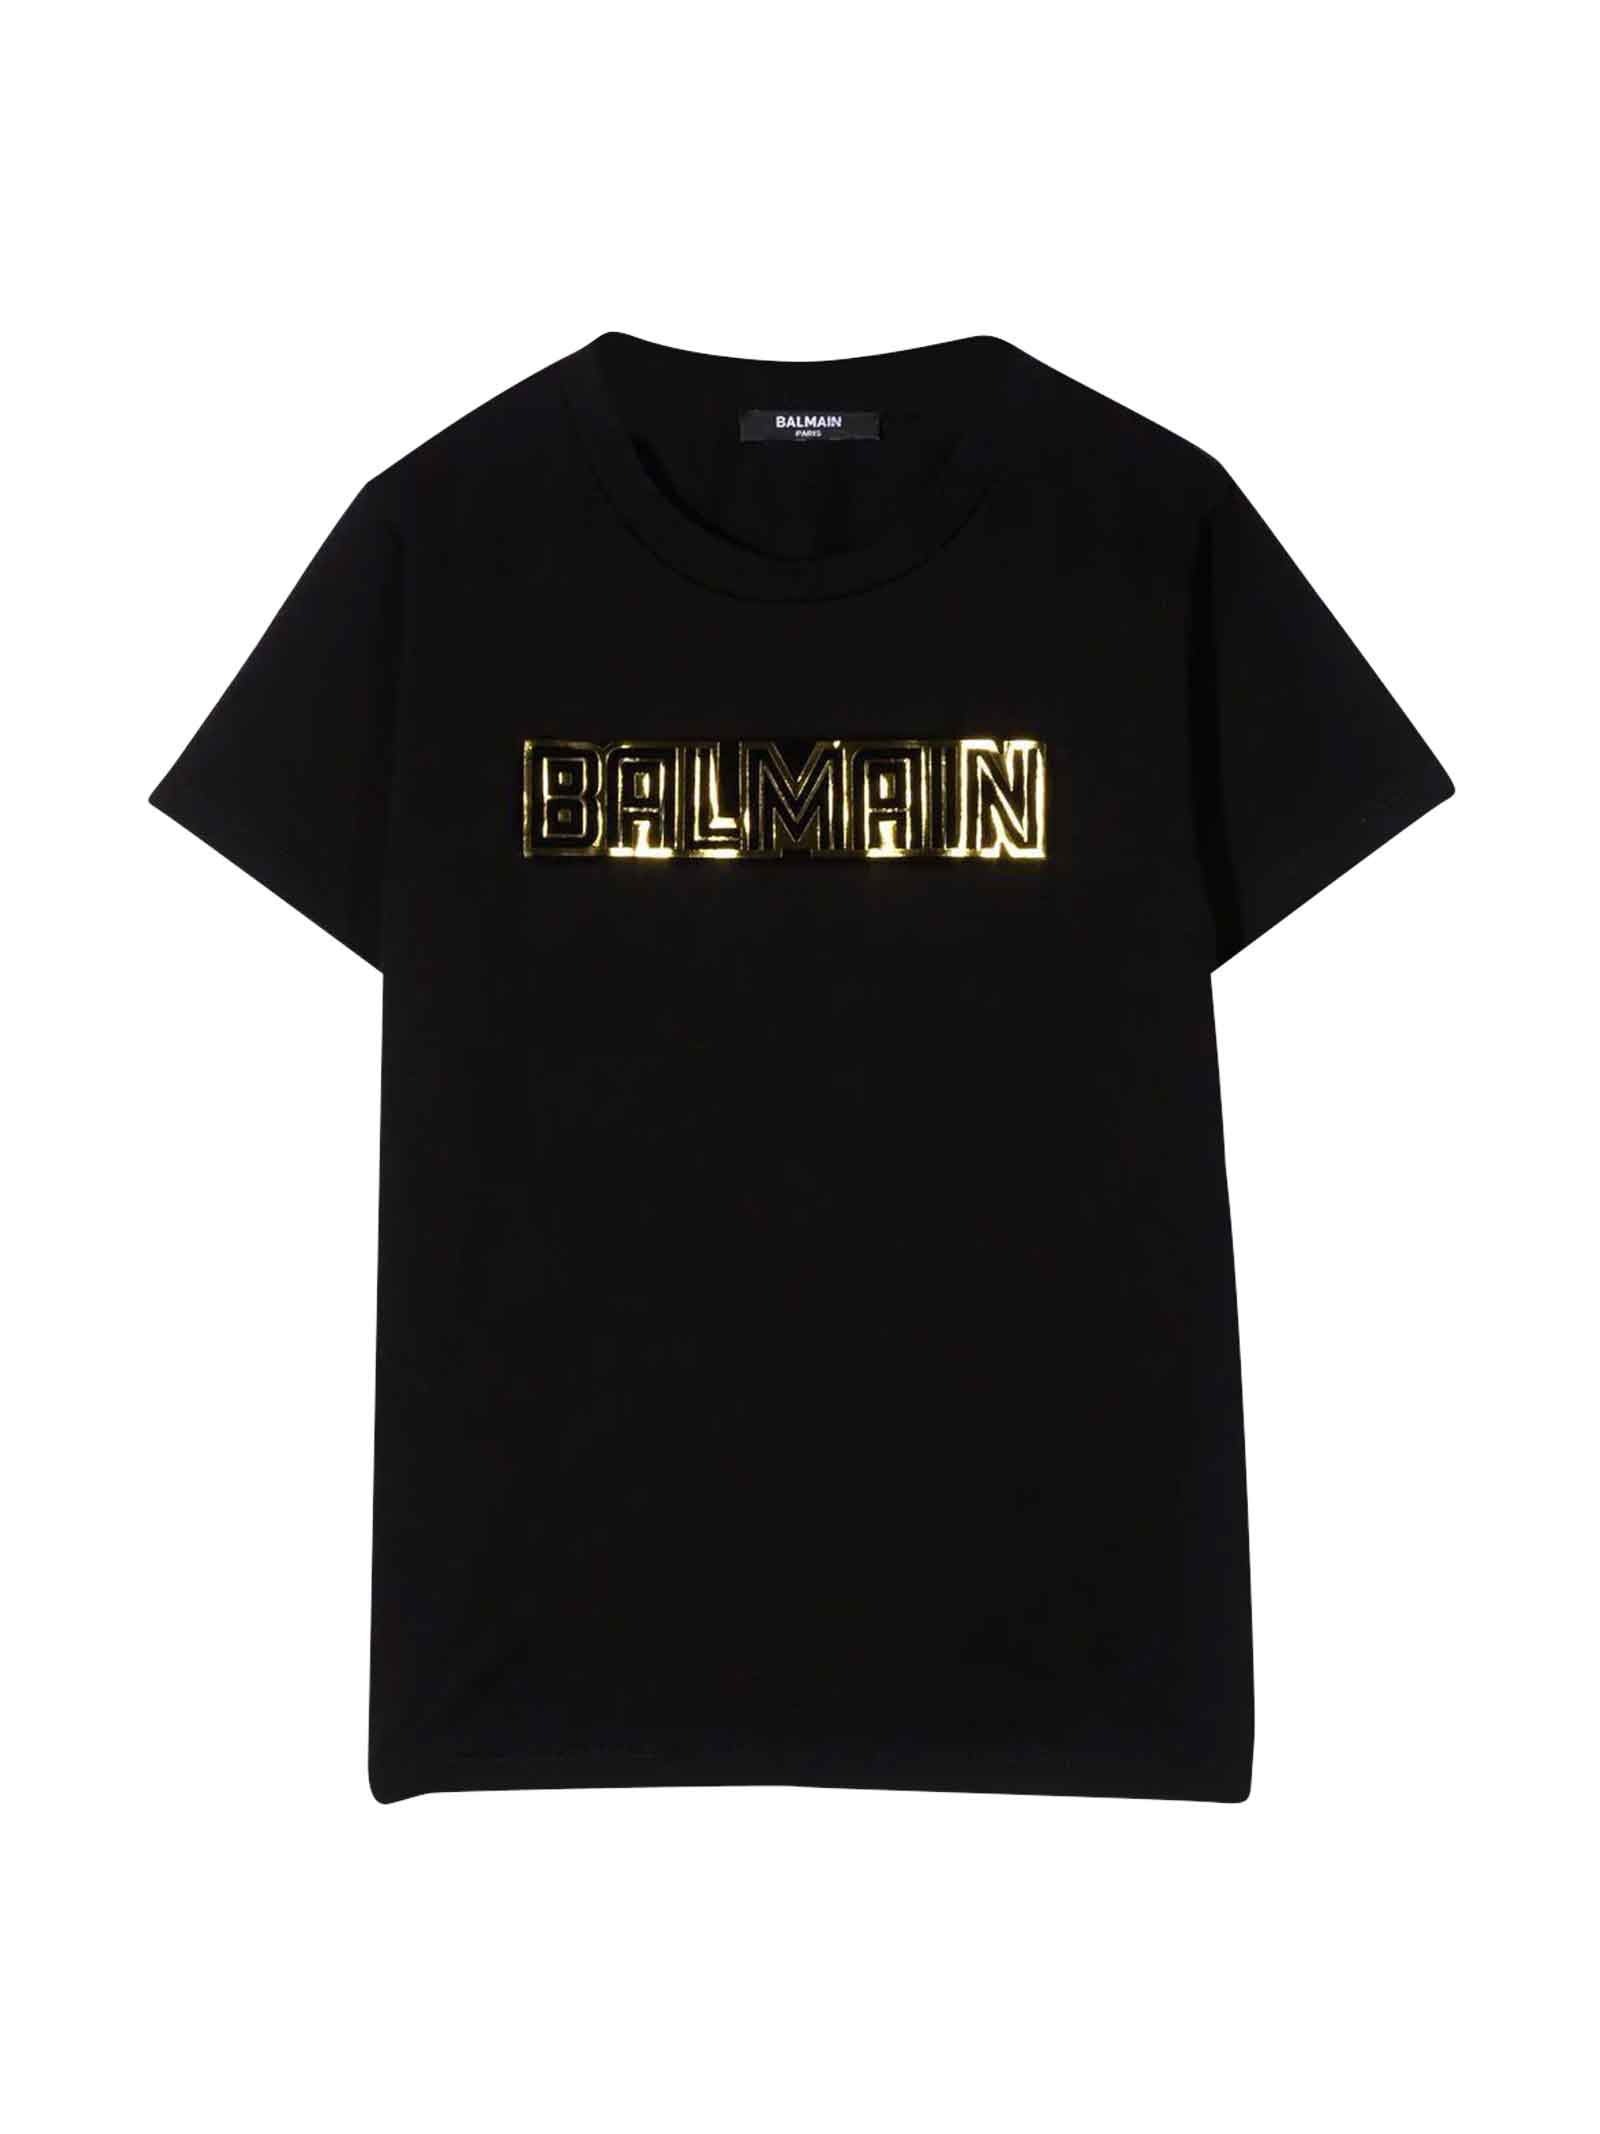 Balmain Black T-shirt With Golden Print